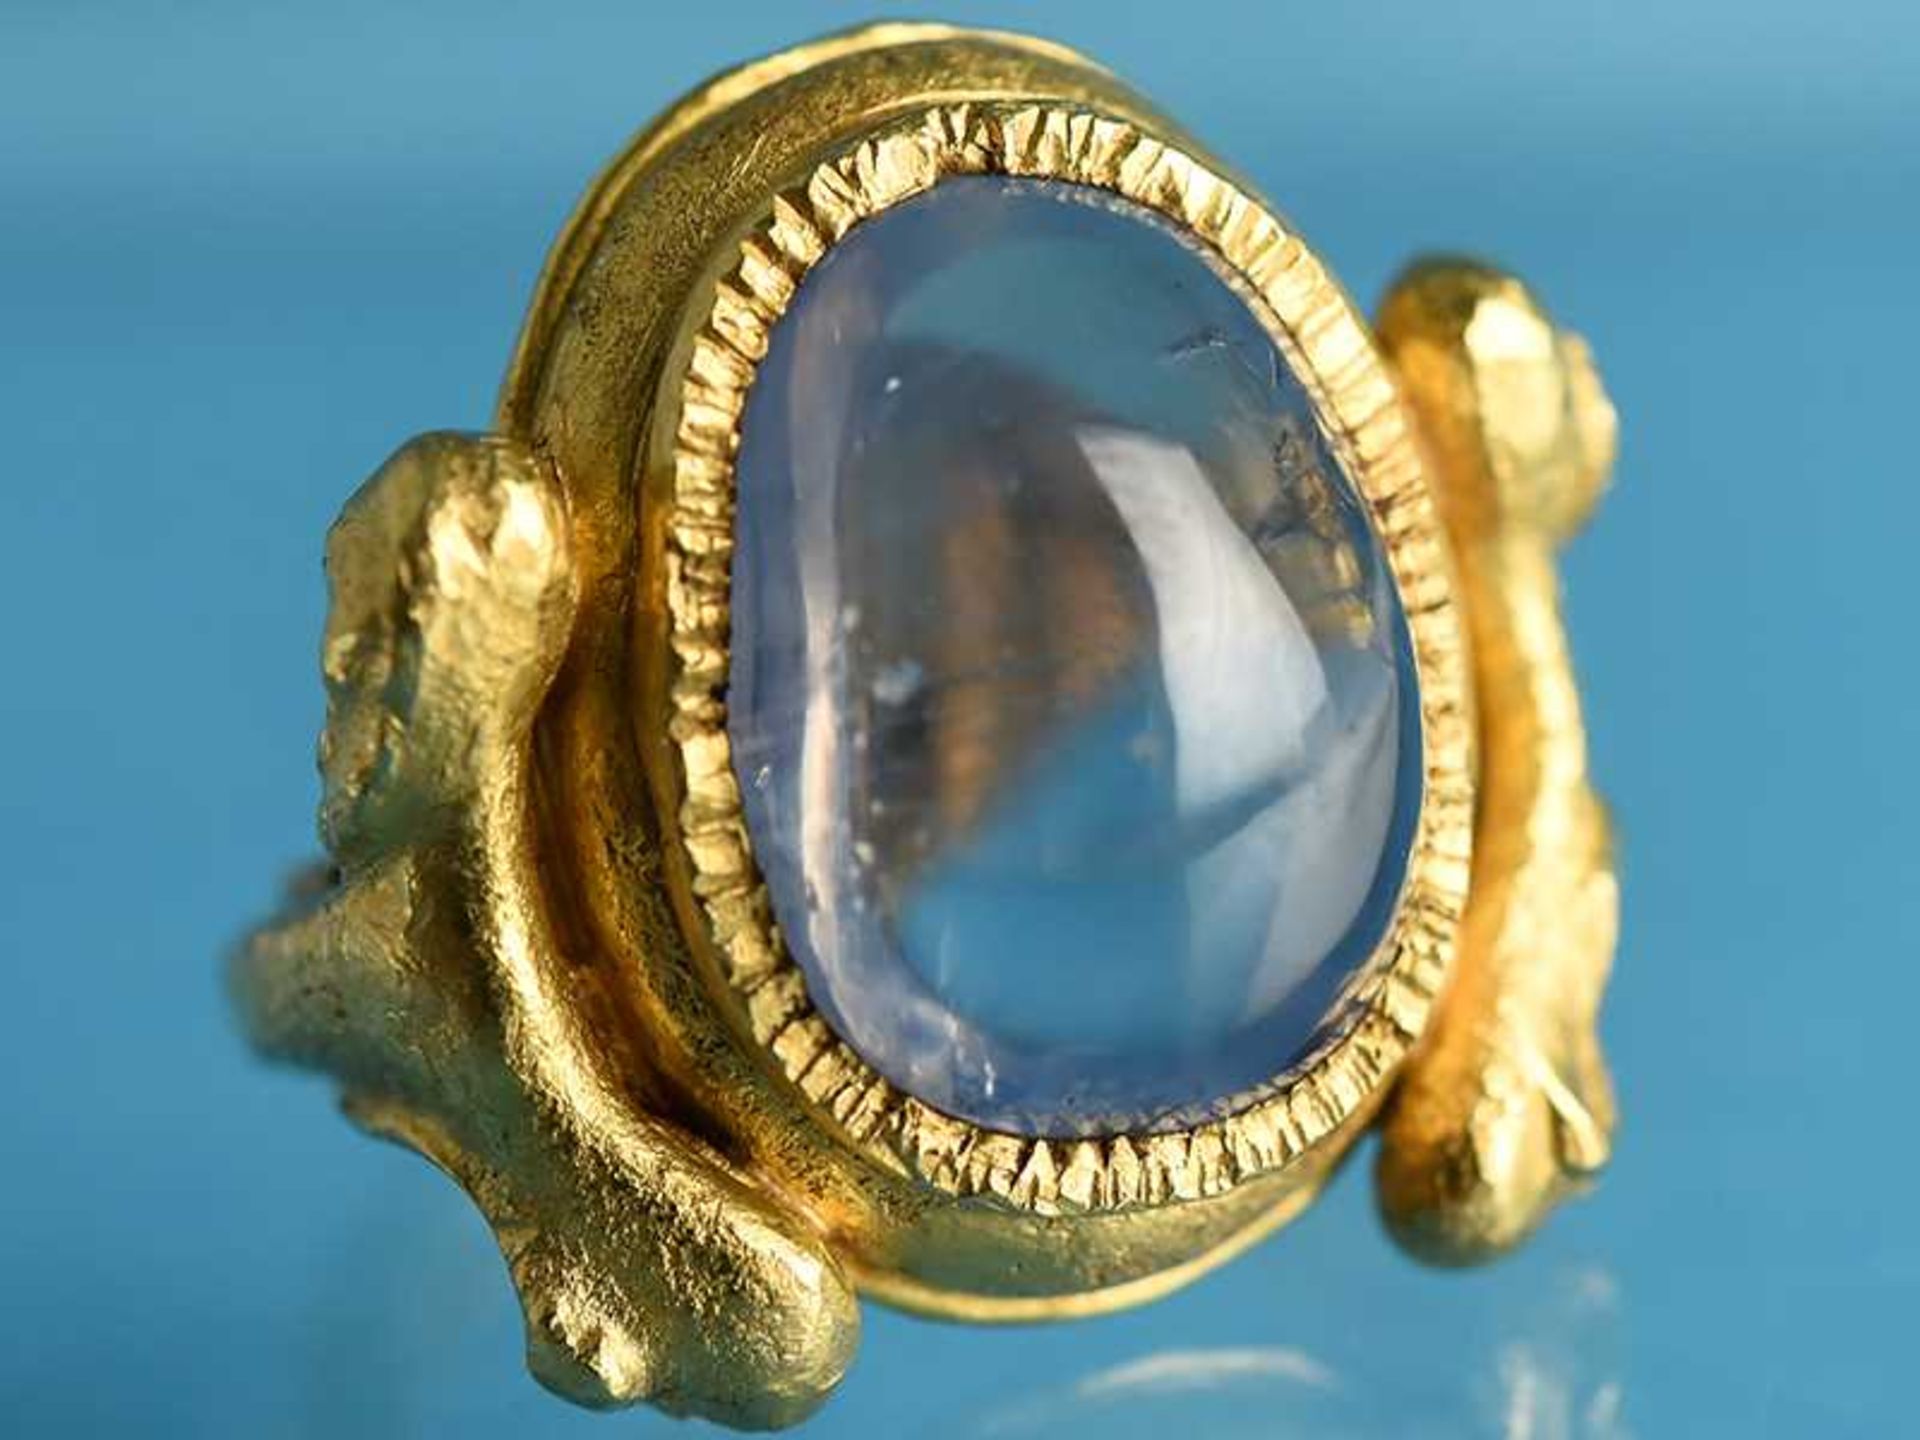 Massiver Ring mit natürlichem Saphir - Cabochon von 30 ct, Goldschmiedearbeit von Wolfgang